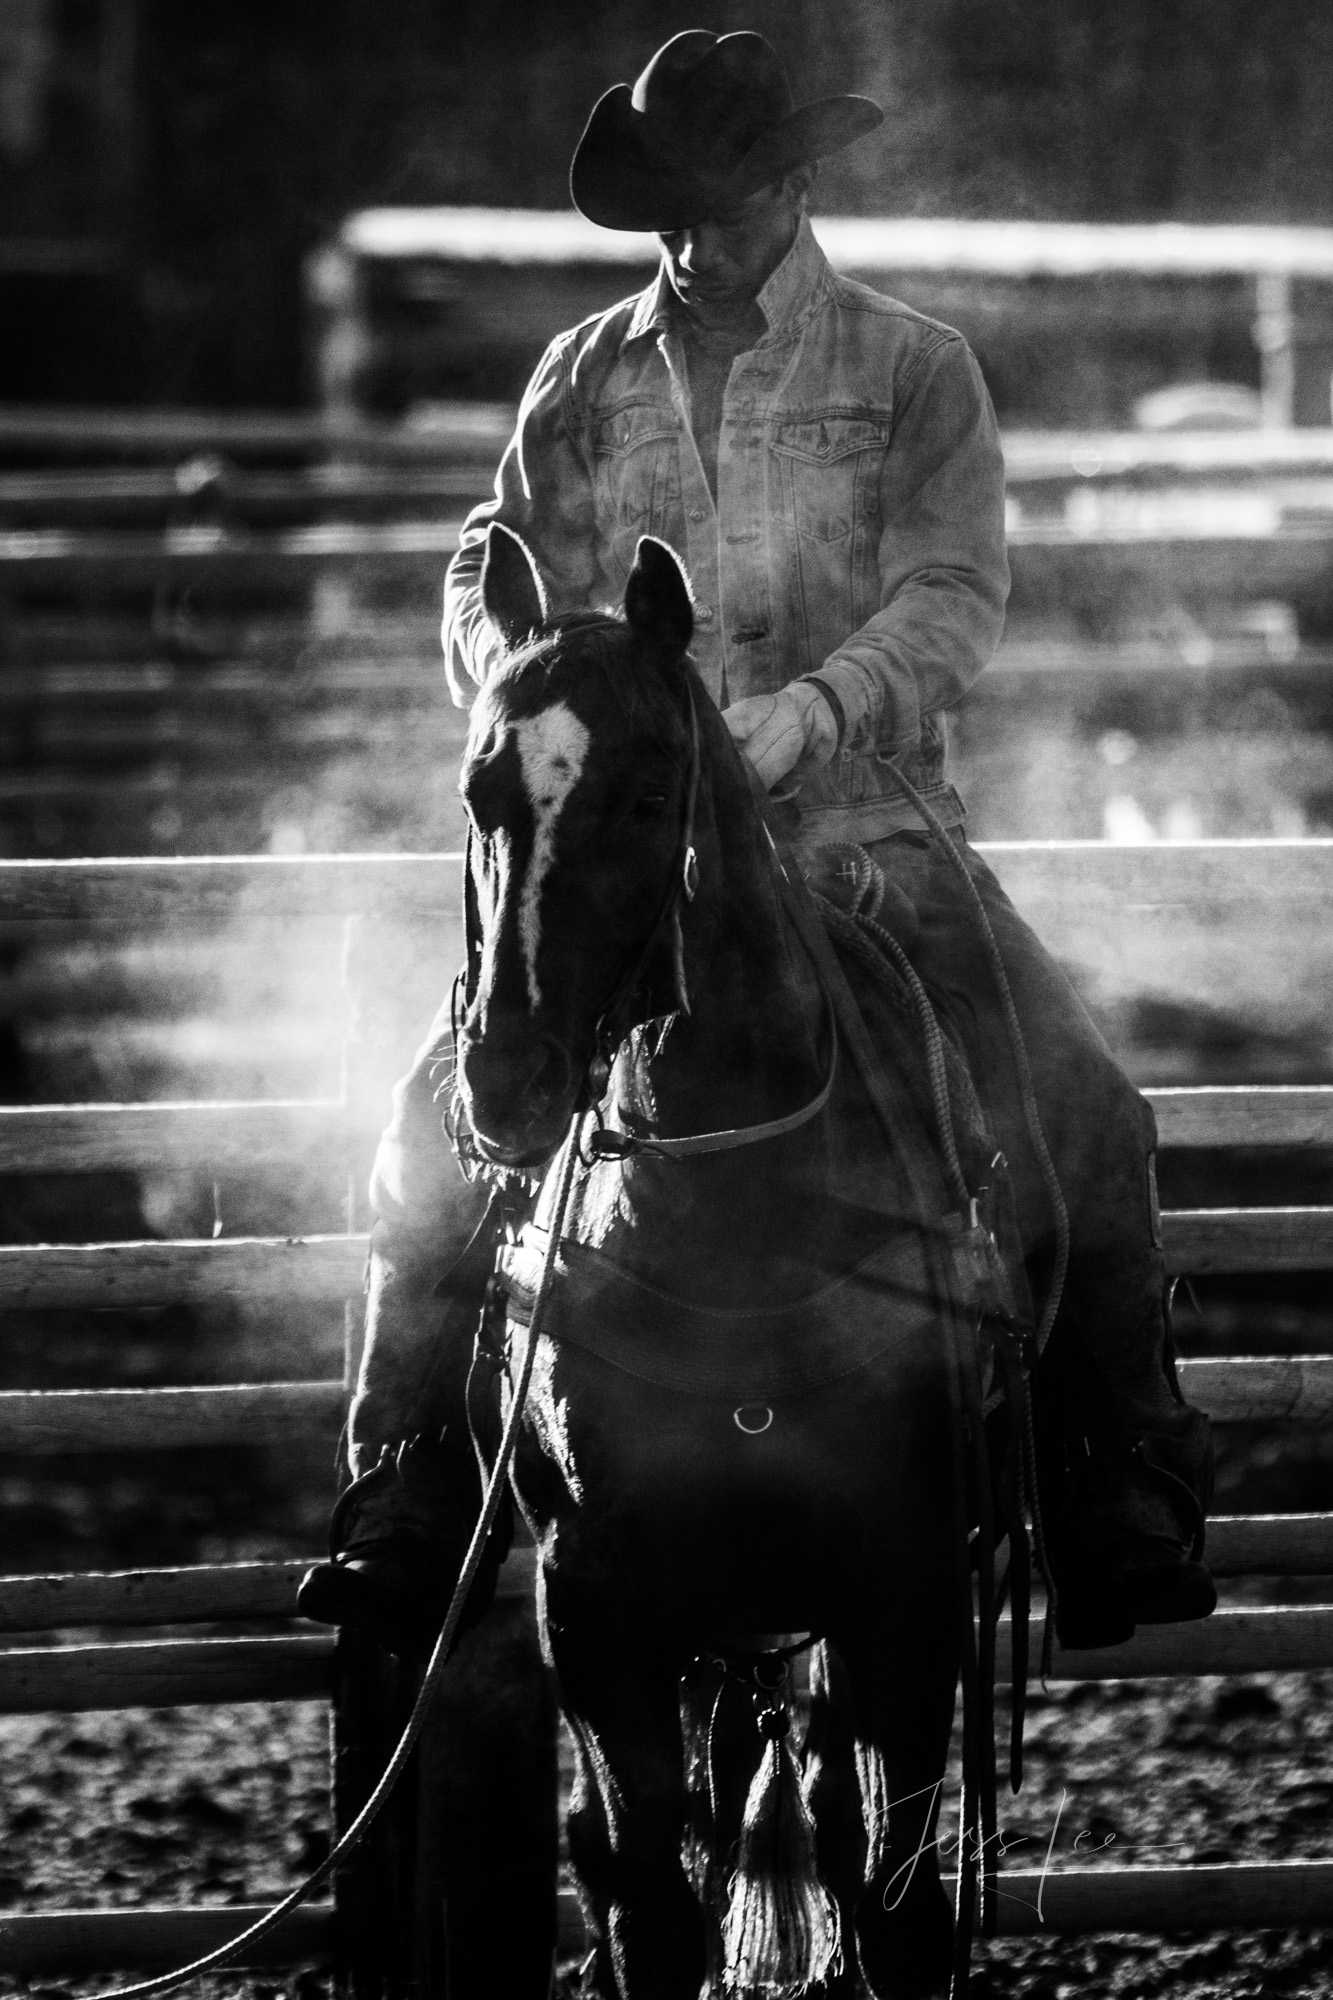 Cowboy Photos, Horse Photos, Black and White Photography